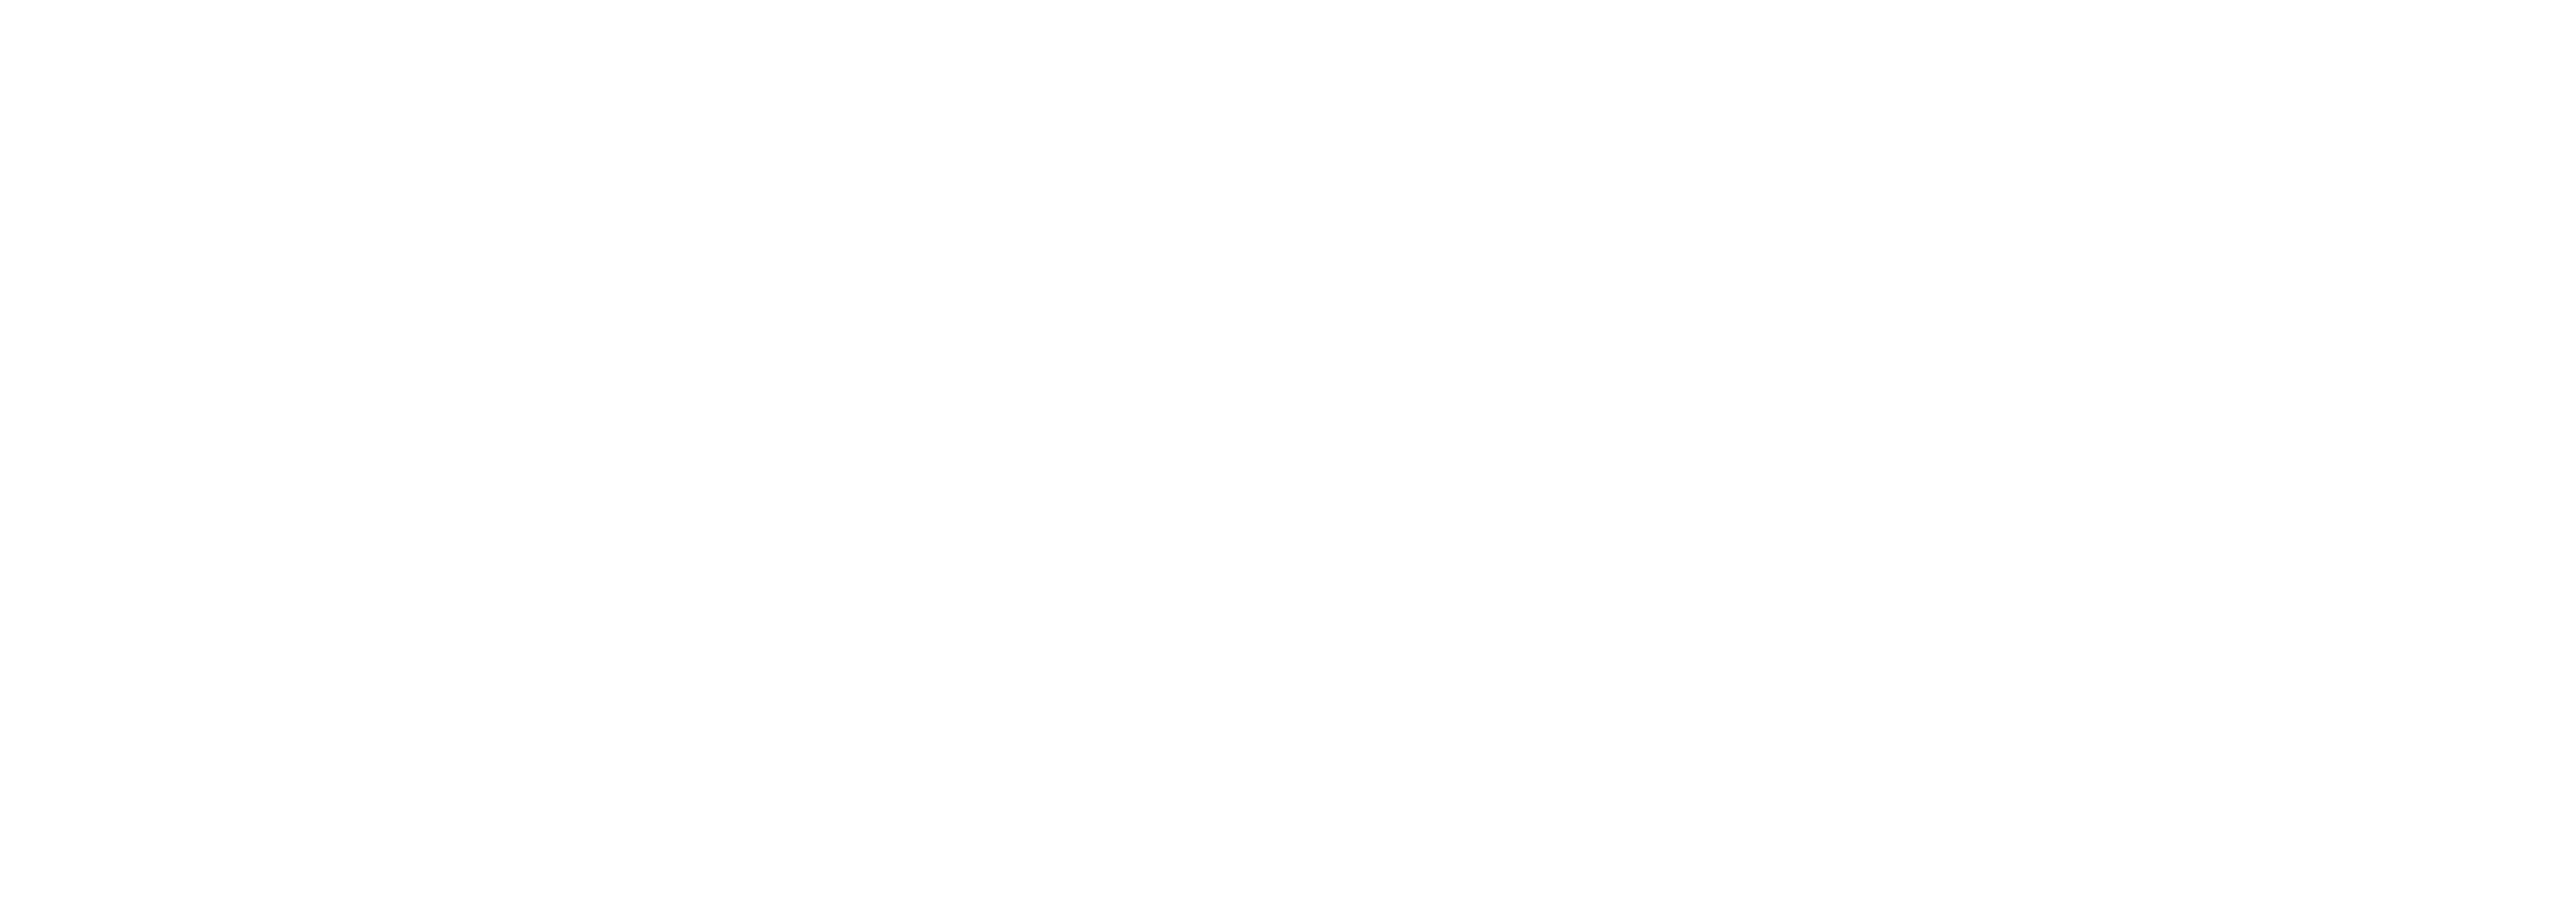 outreachx logo white